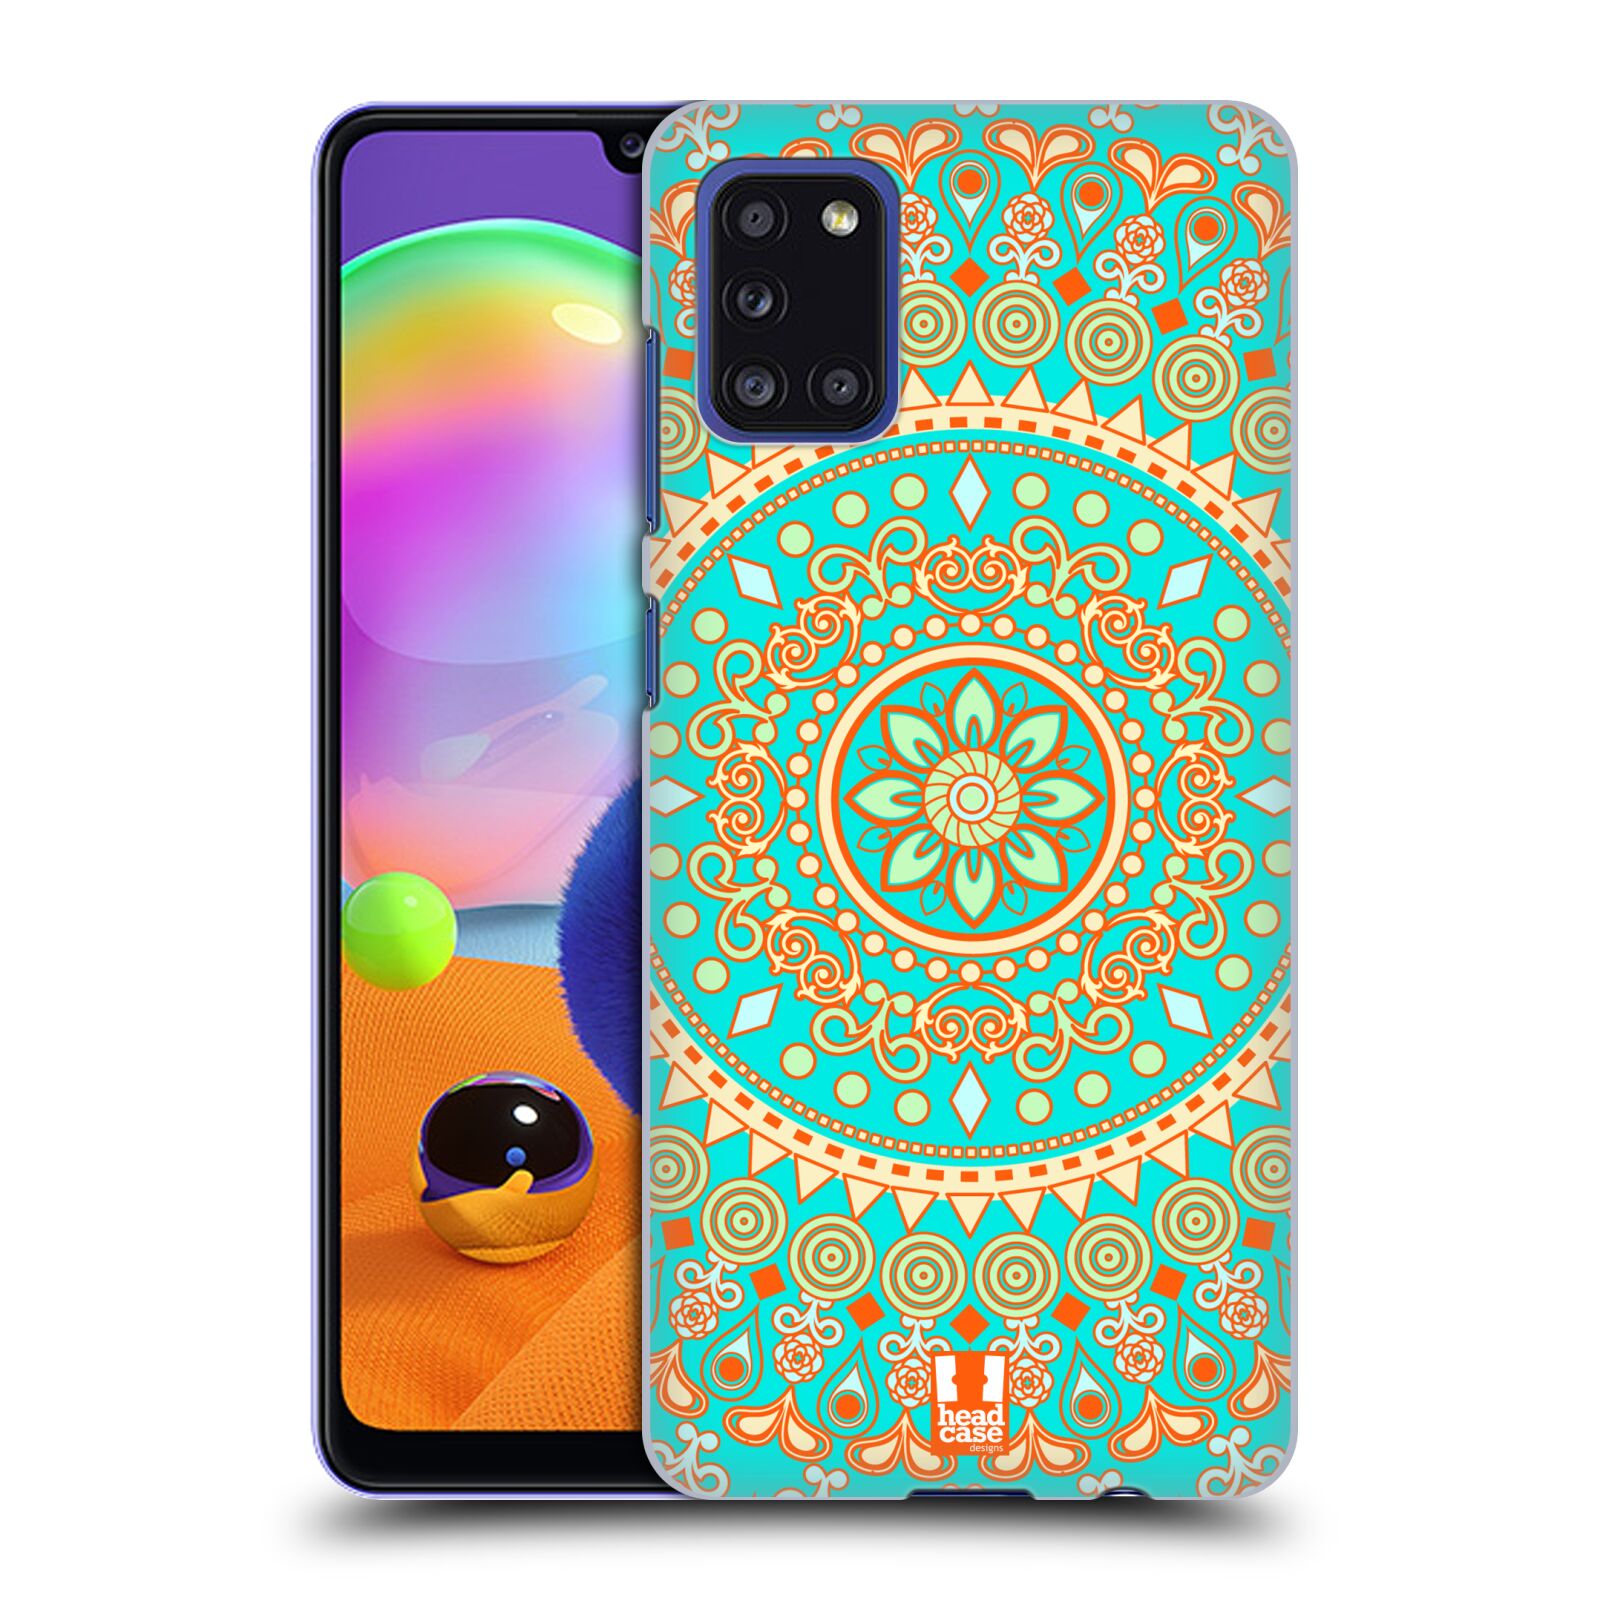 Zadní kryt na mobil Samsung Galaxy A31 vzor Indie Mandala slunce barevný motiv TYRKYSOVÁ, ZELENÁ